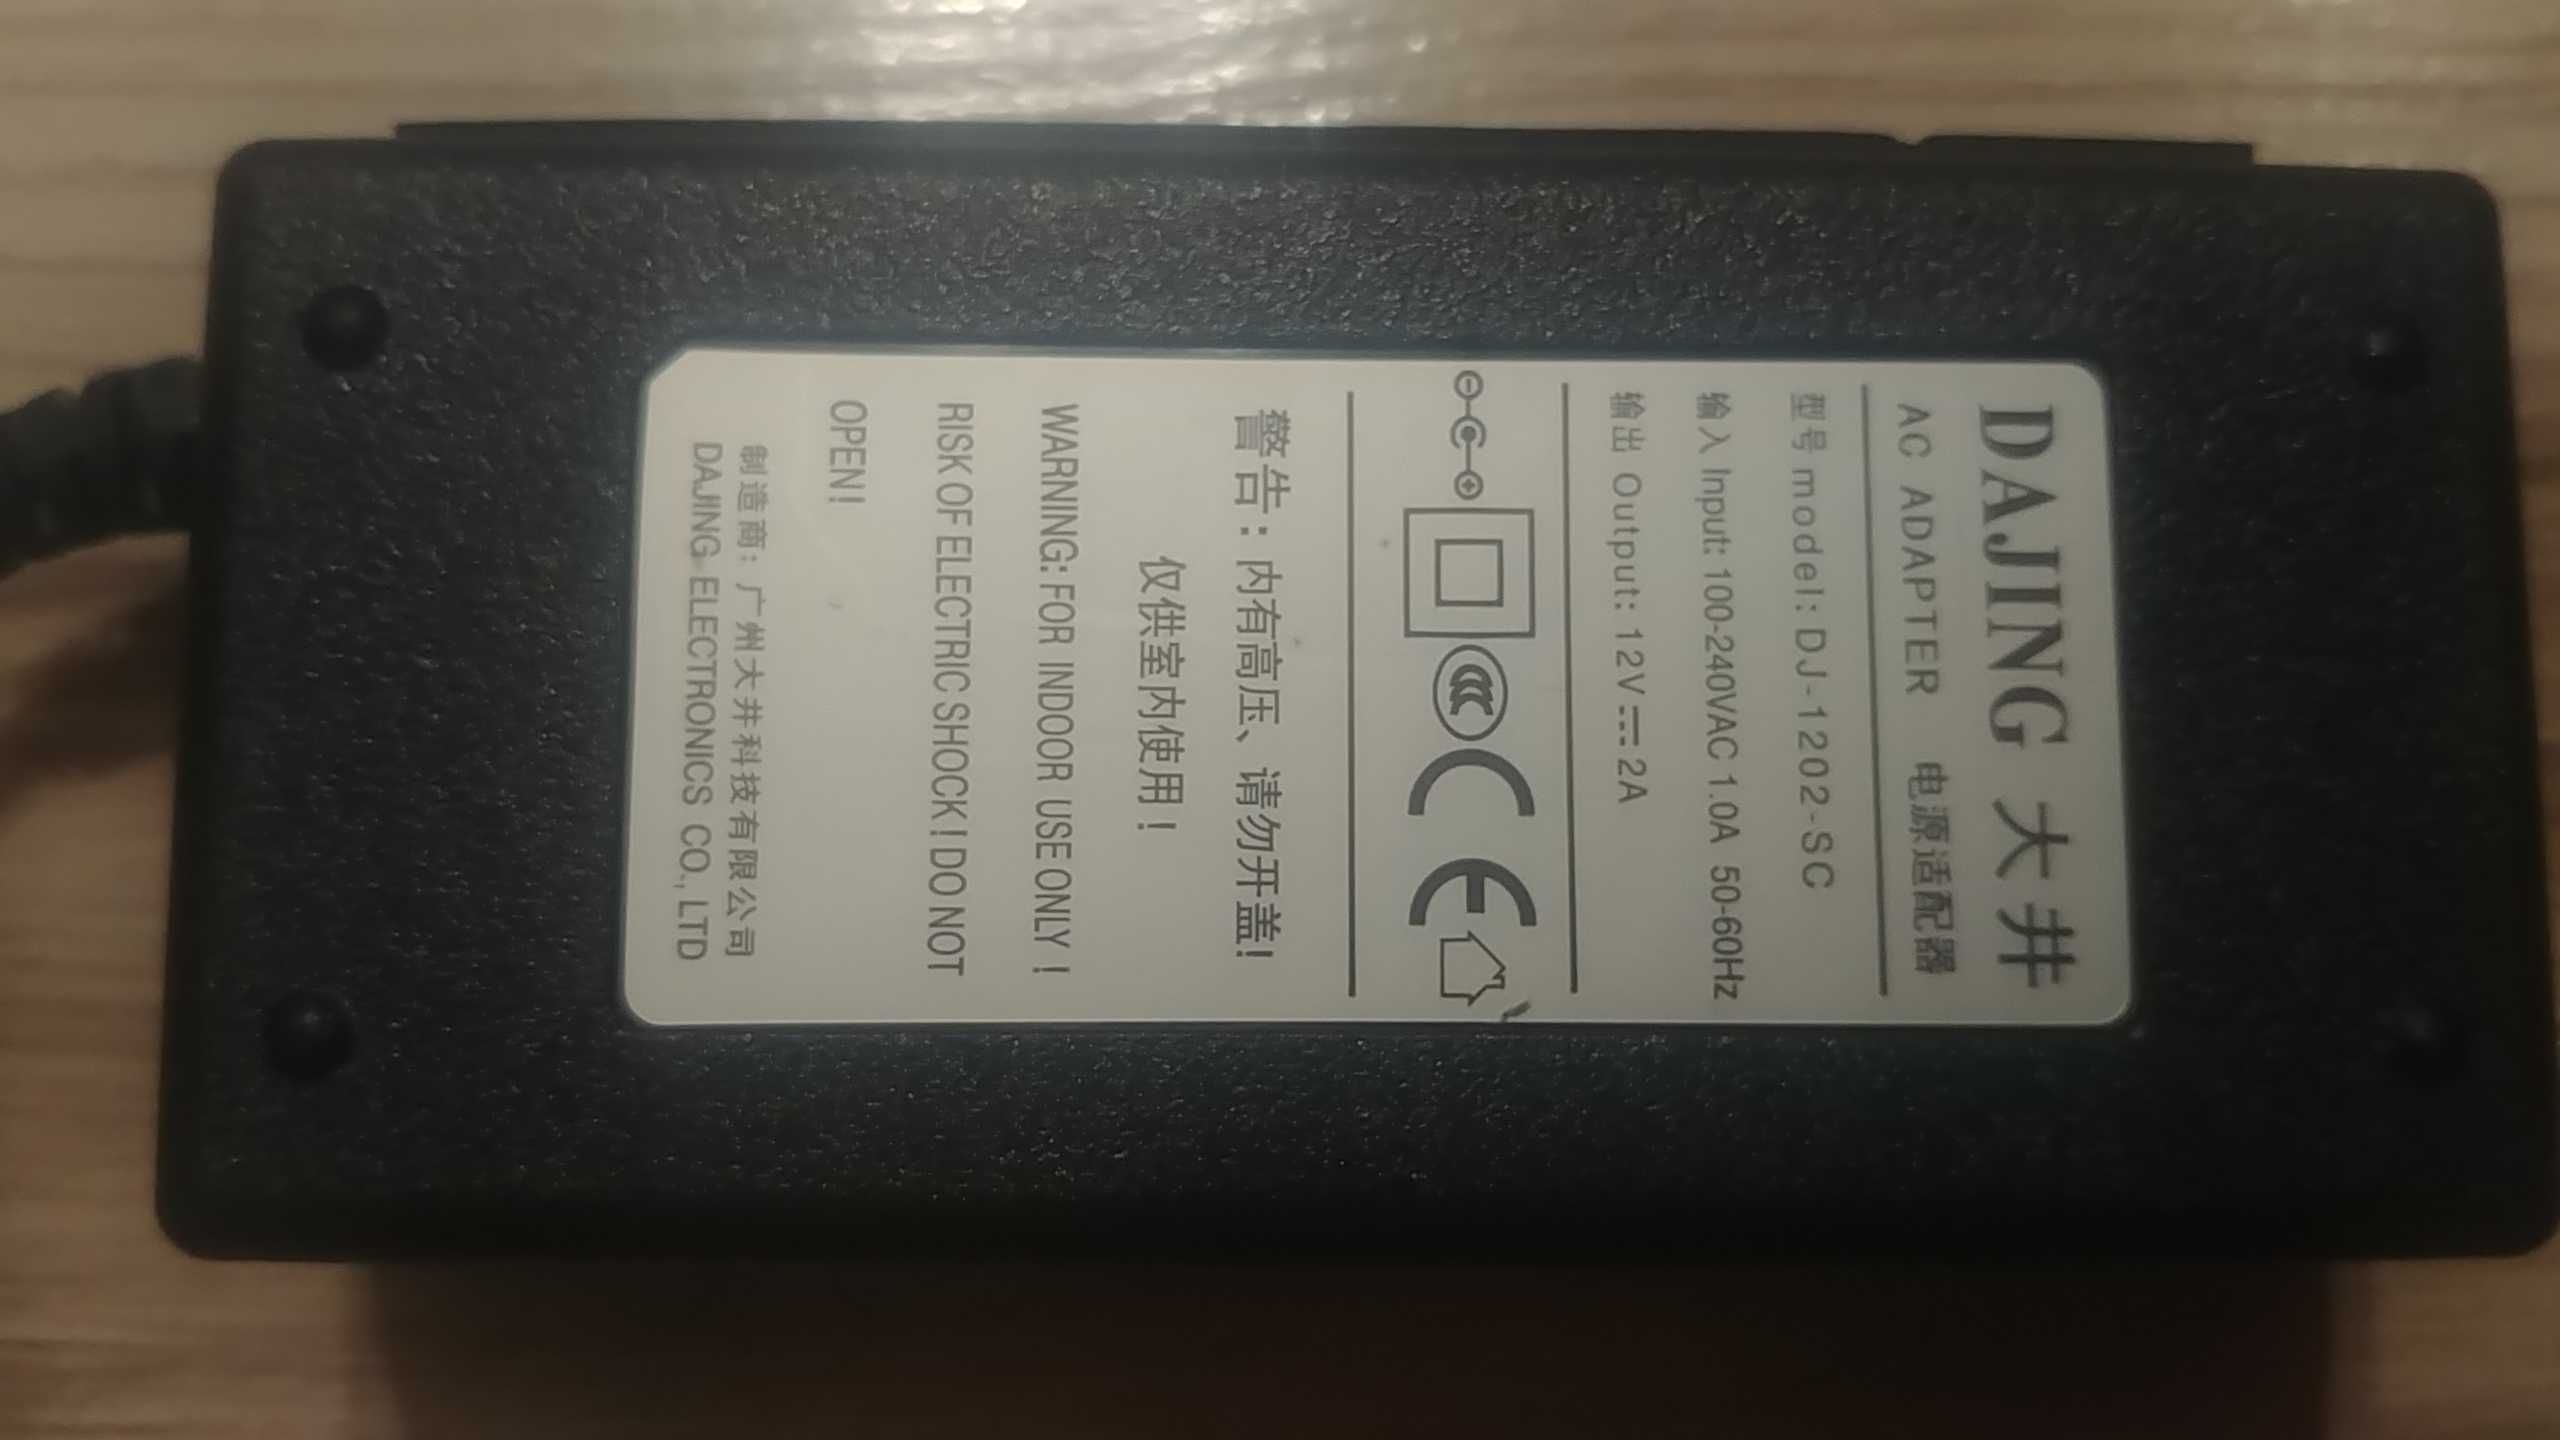 Блок питания 12В 2 А (для монитора ПК или др. устройства на 12 вольт)